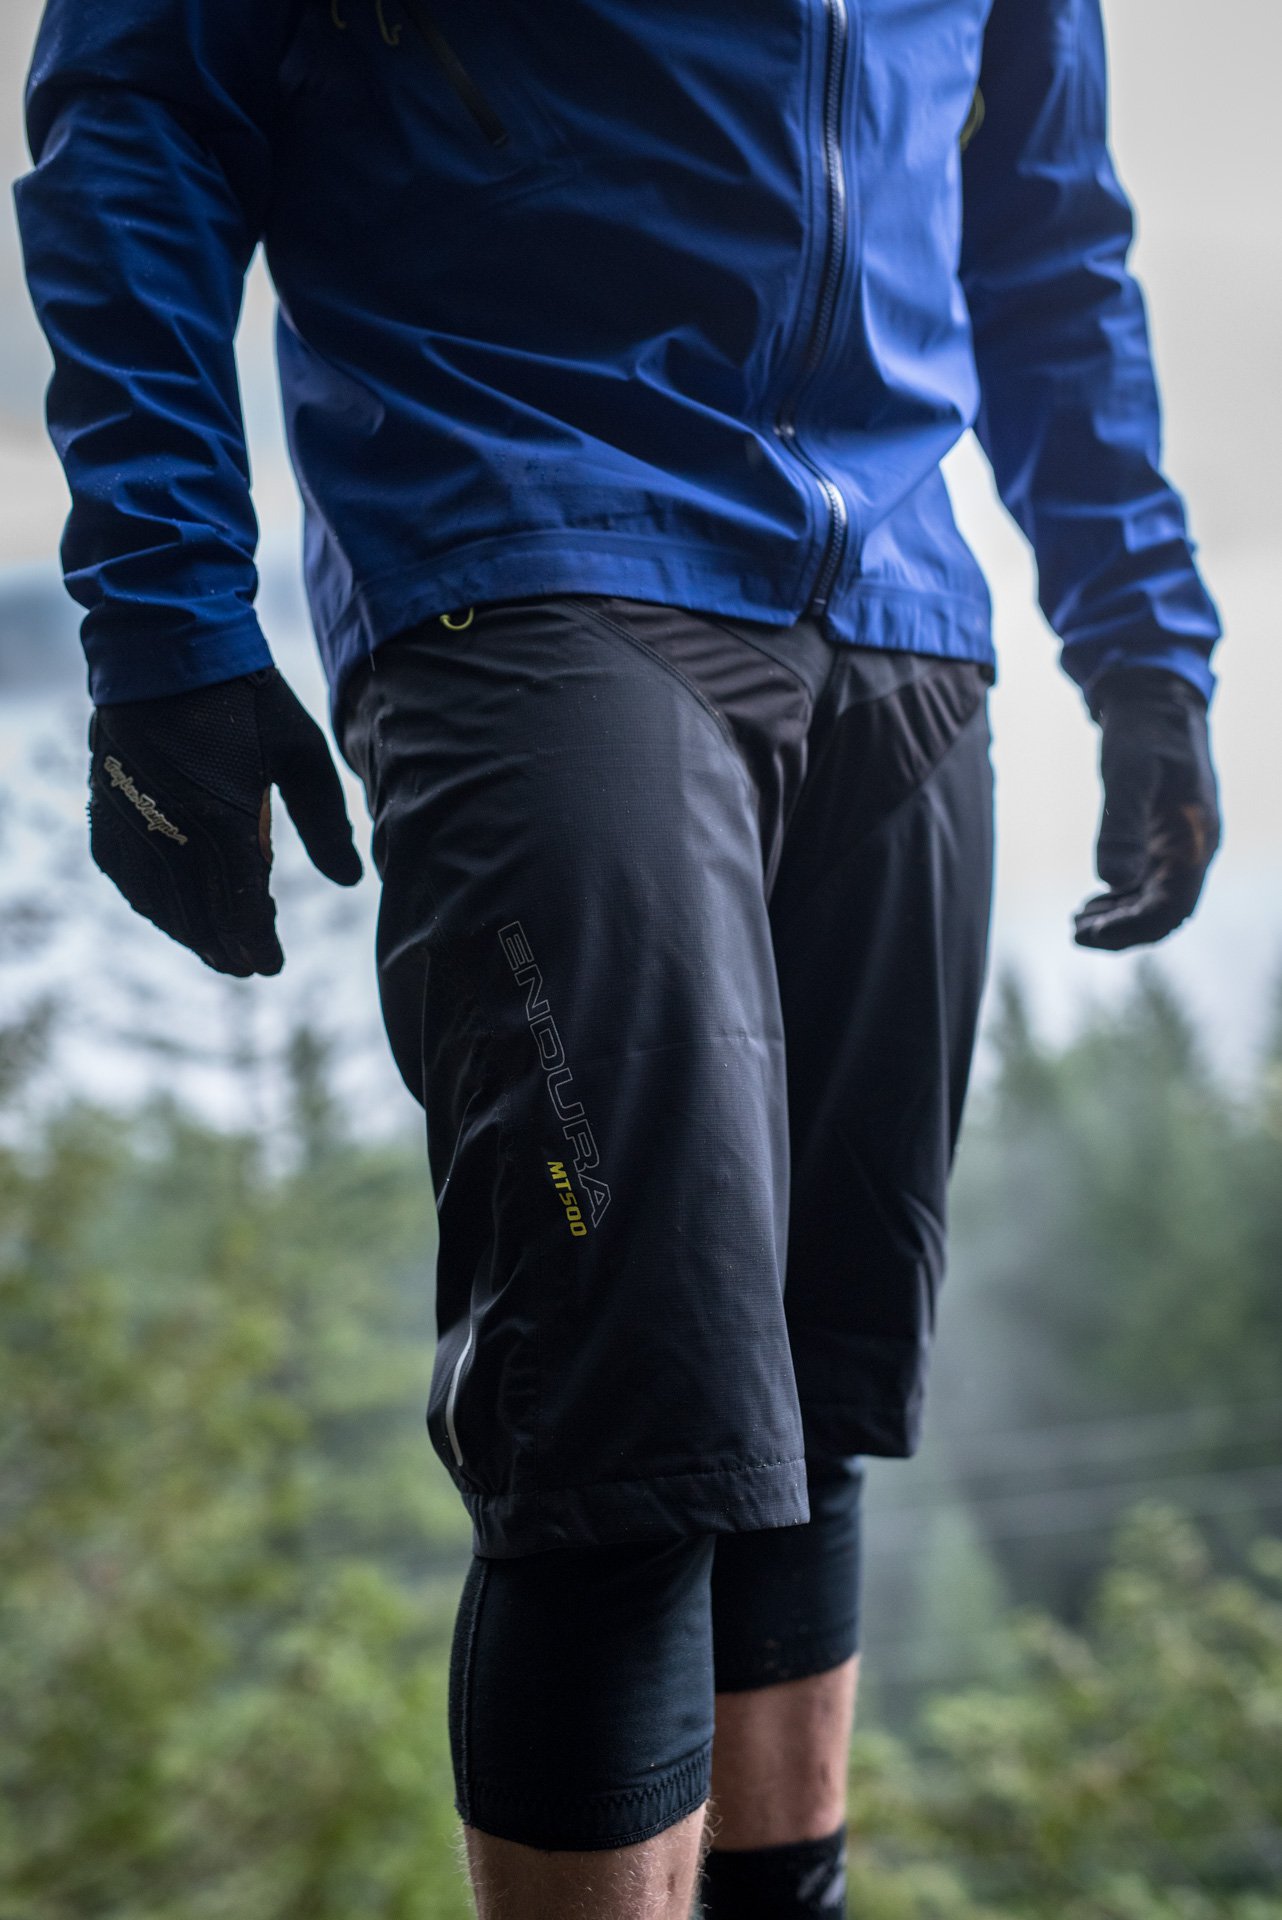 Review: Endura MT500 Waterproof Jacket and Shorts